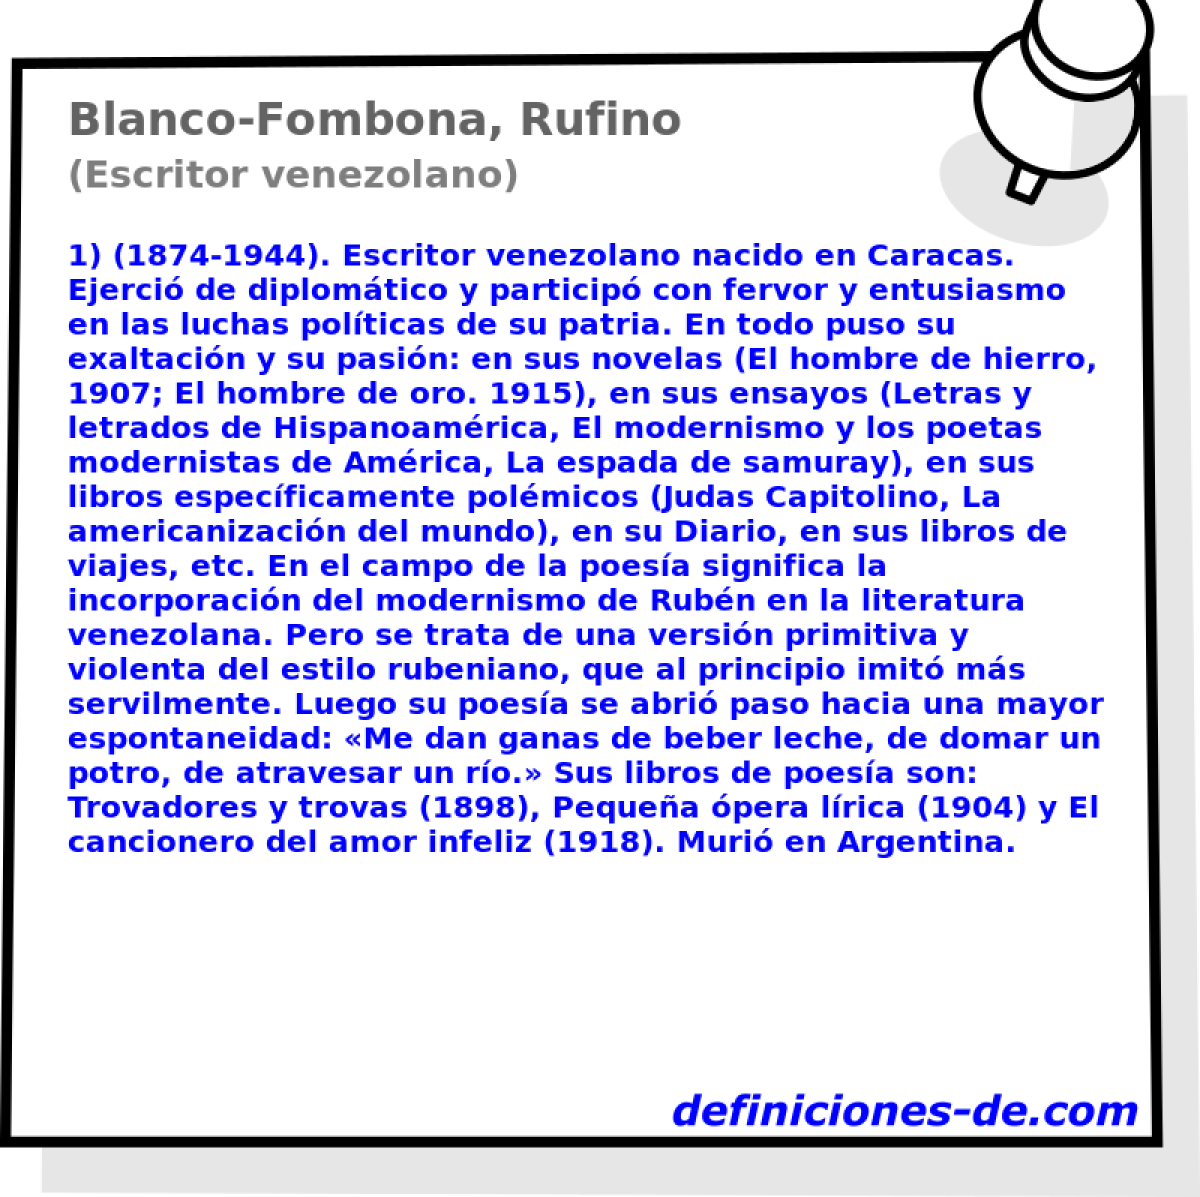 Blanco-Fombona, Rufino (Escritor venezolano)